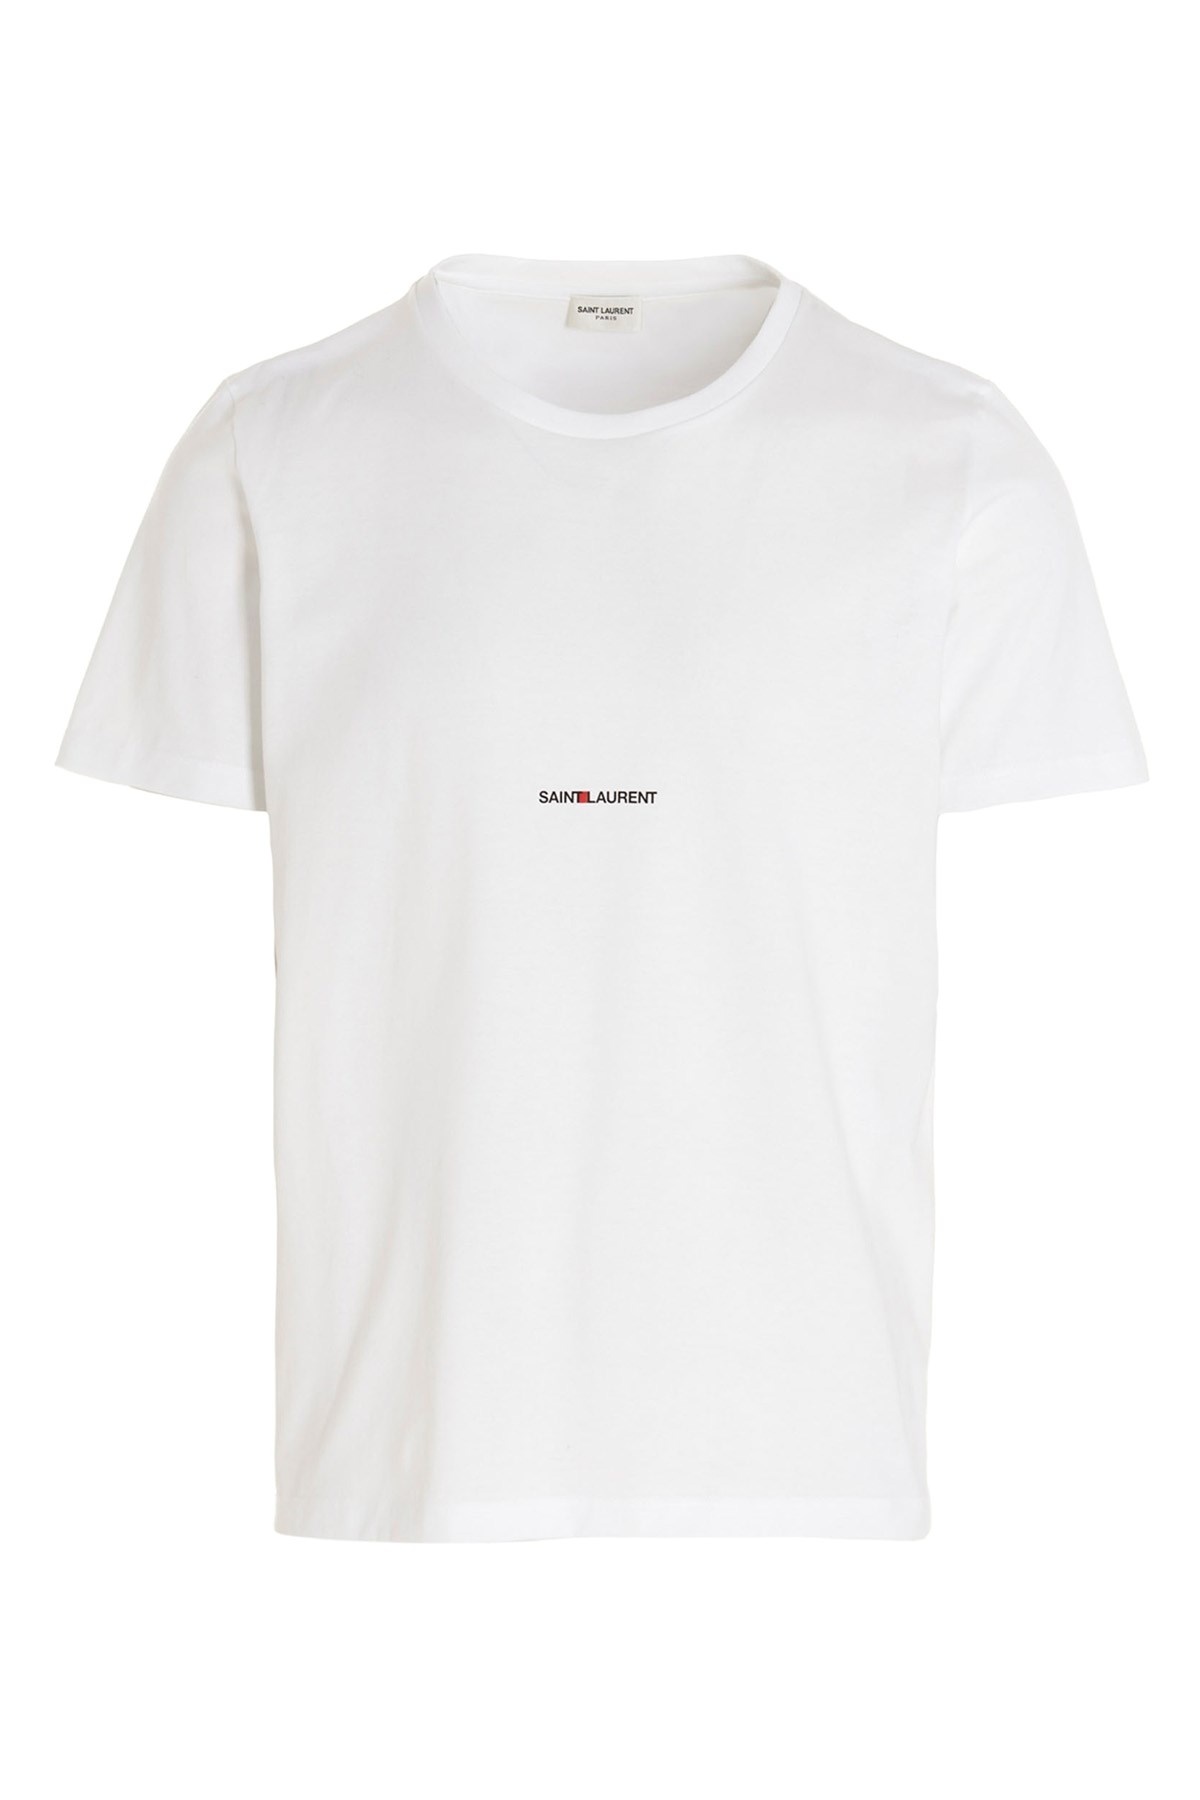 'Saint Laurent Rive Gauche' T-shirt - 1